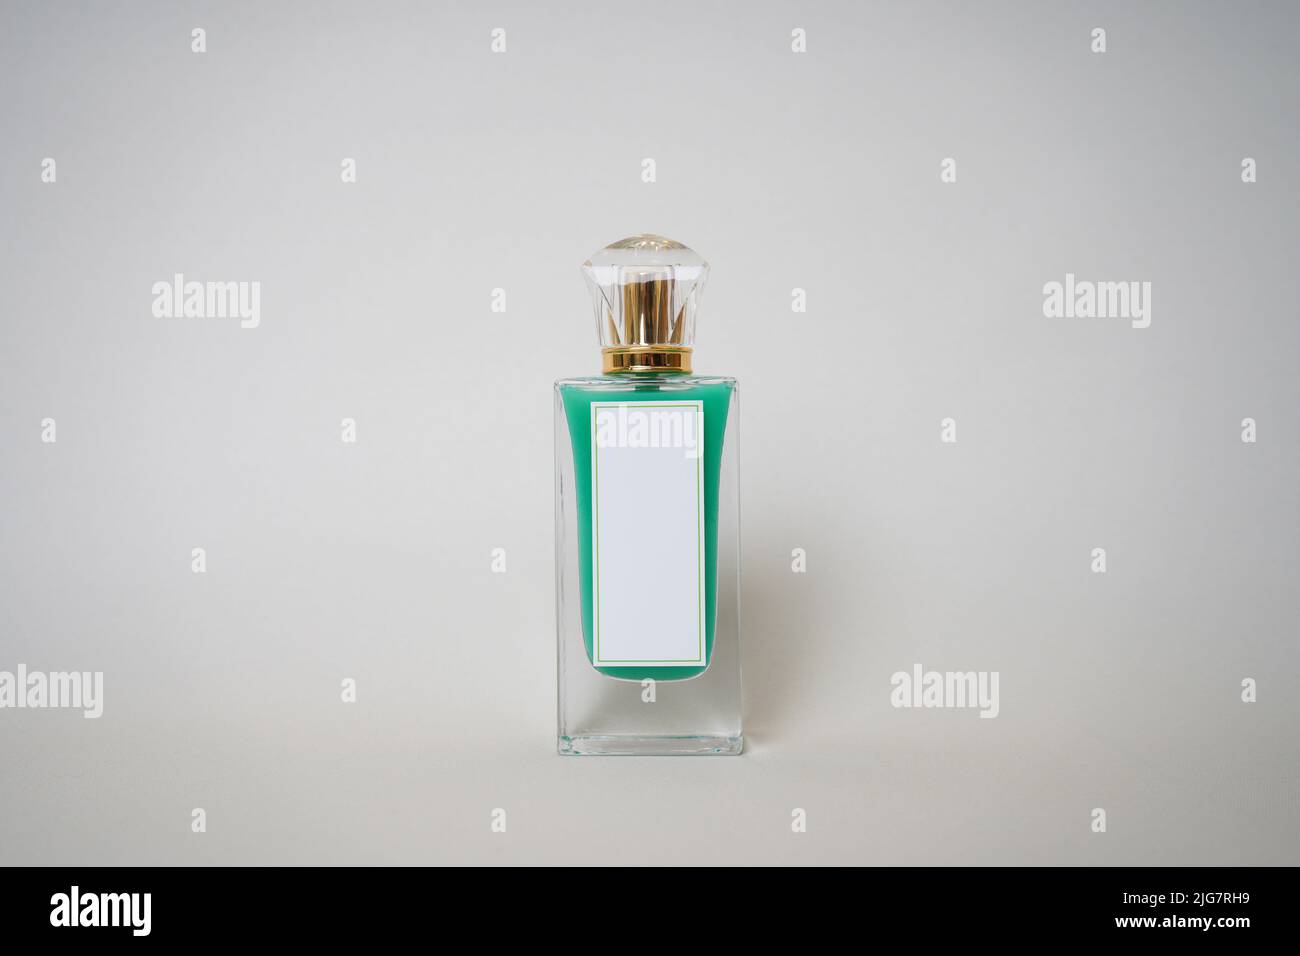 Grüne parfümflasche -Fotos und -Bildmaterial in hoher Auflösung – Alamy